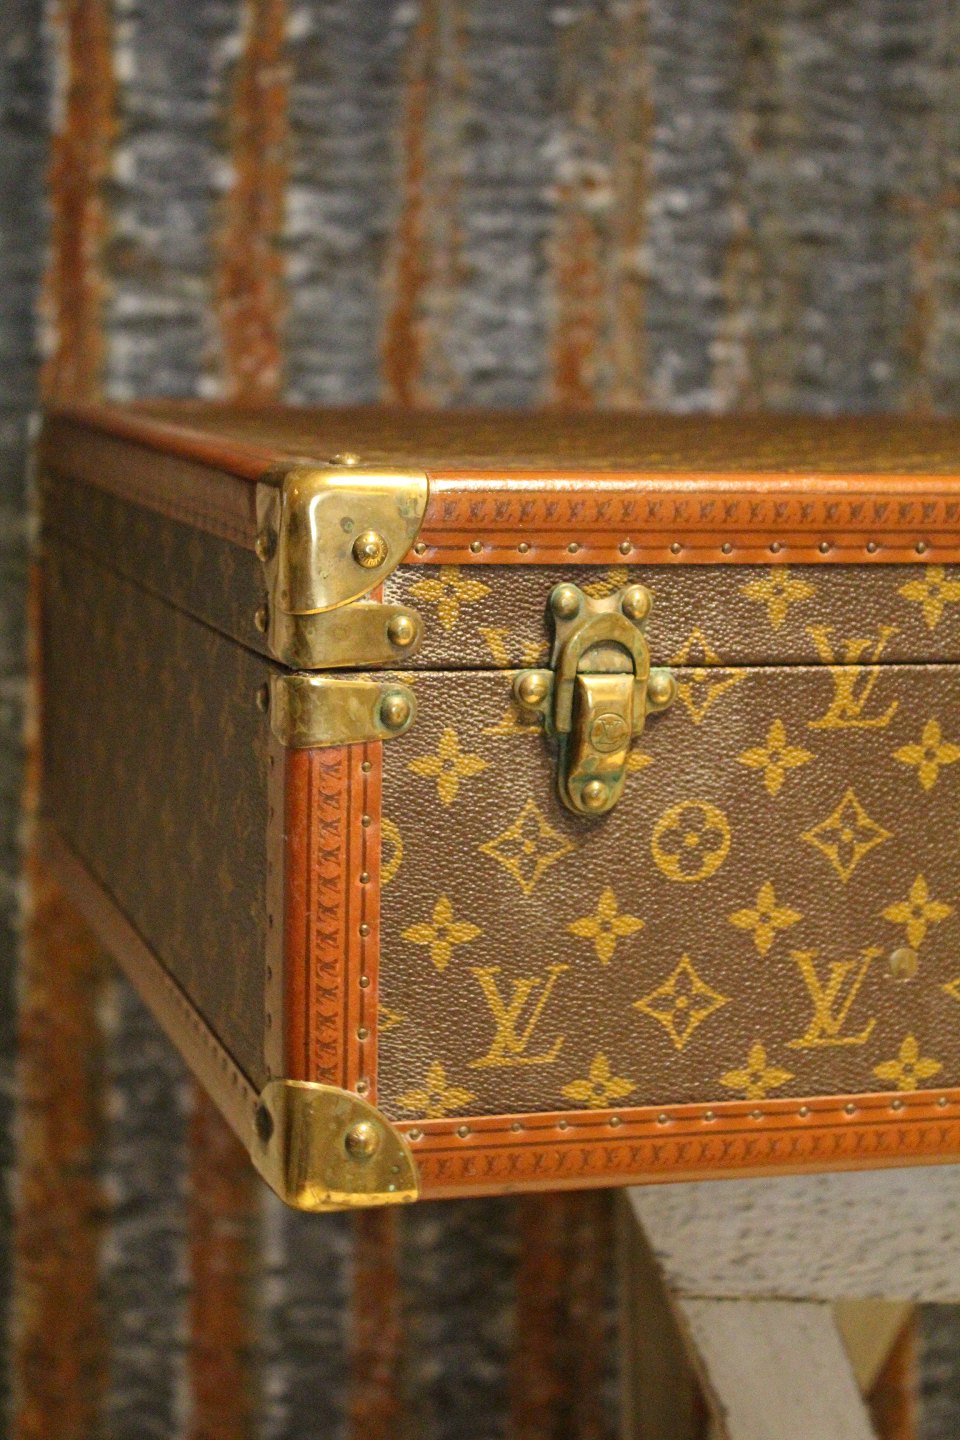 Gammel Louis Vuitton rejse (hardbox) * med LV logo.